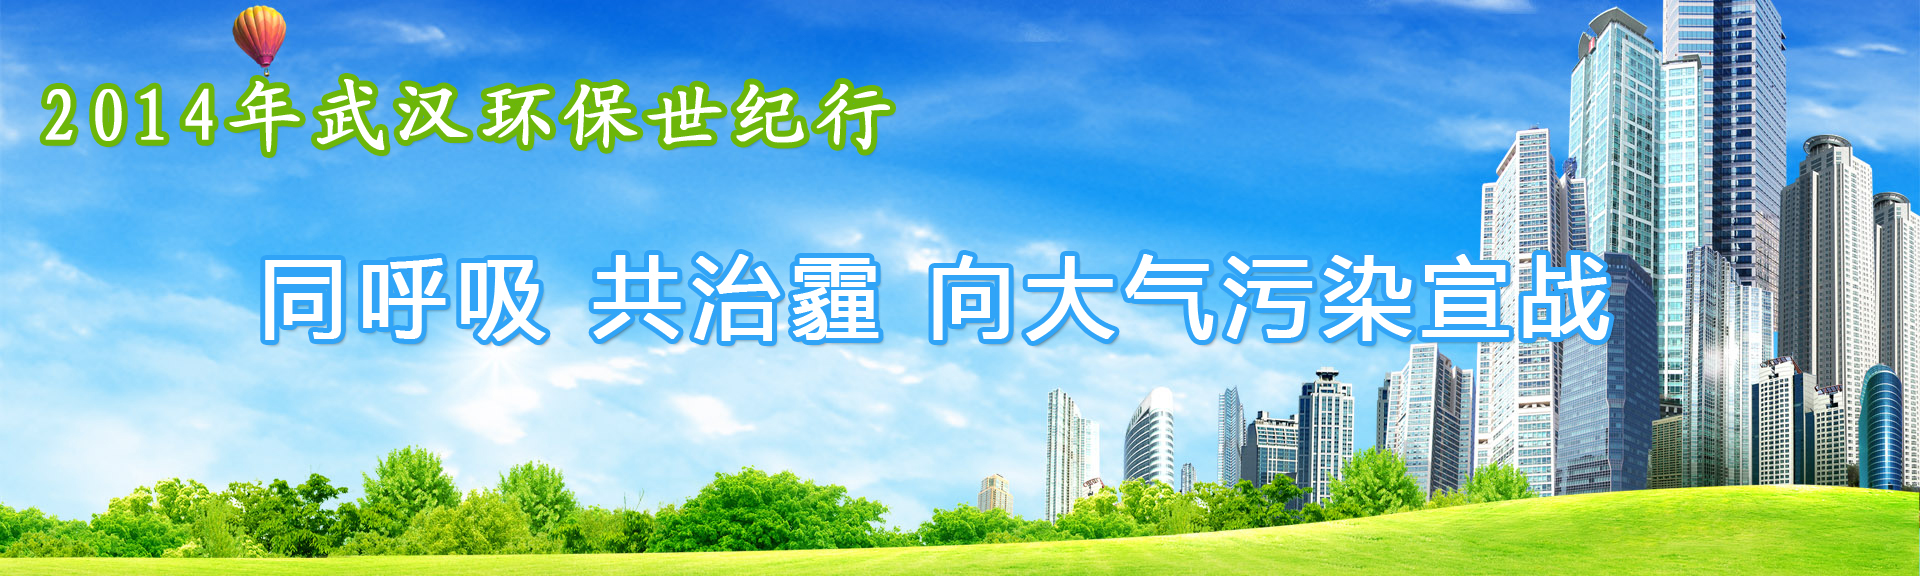 2014年武汉环保世纪行启动